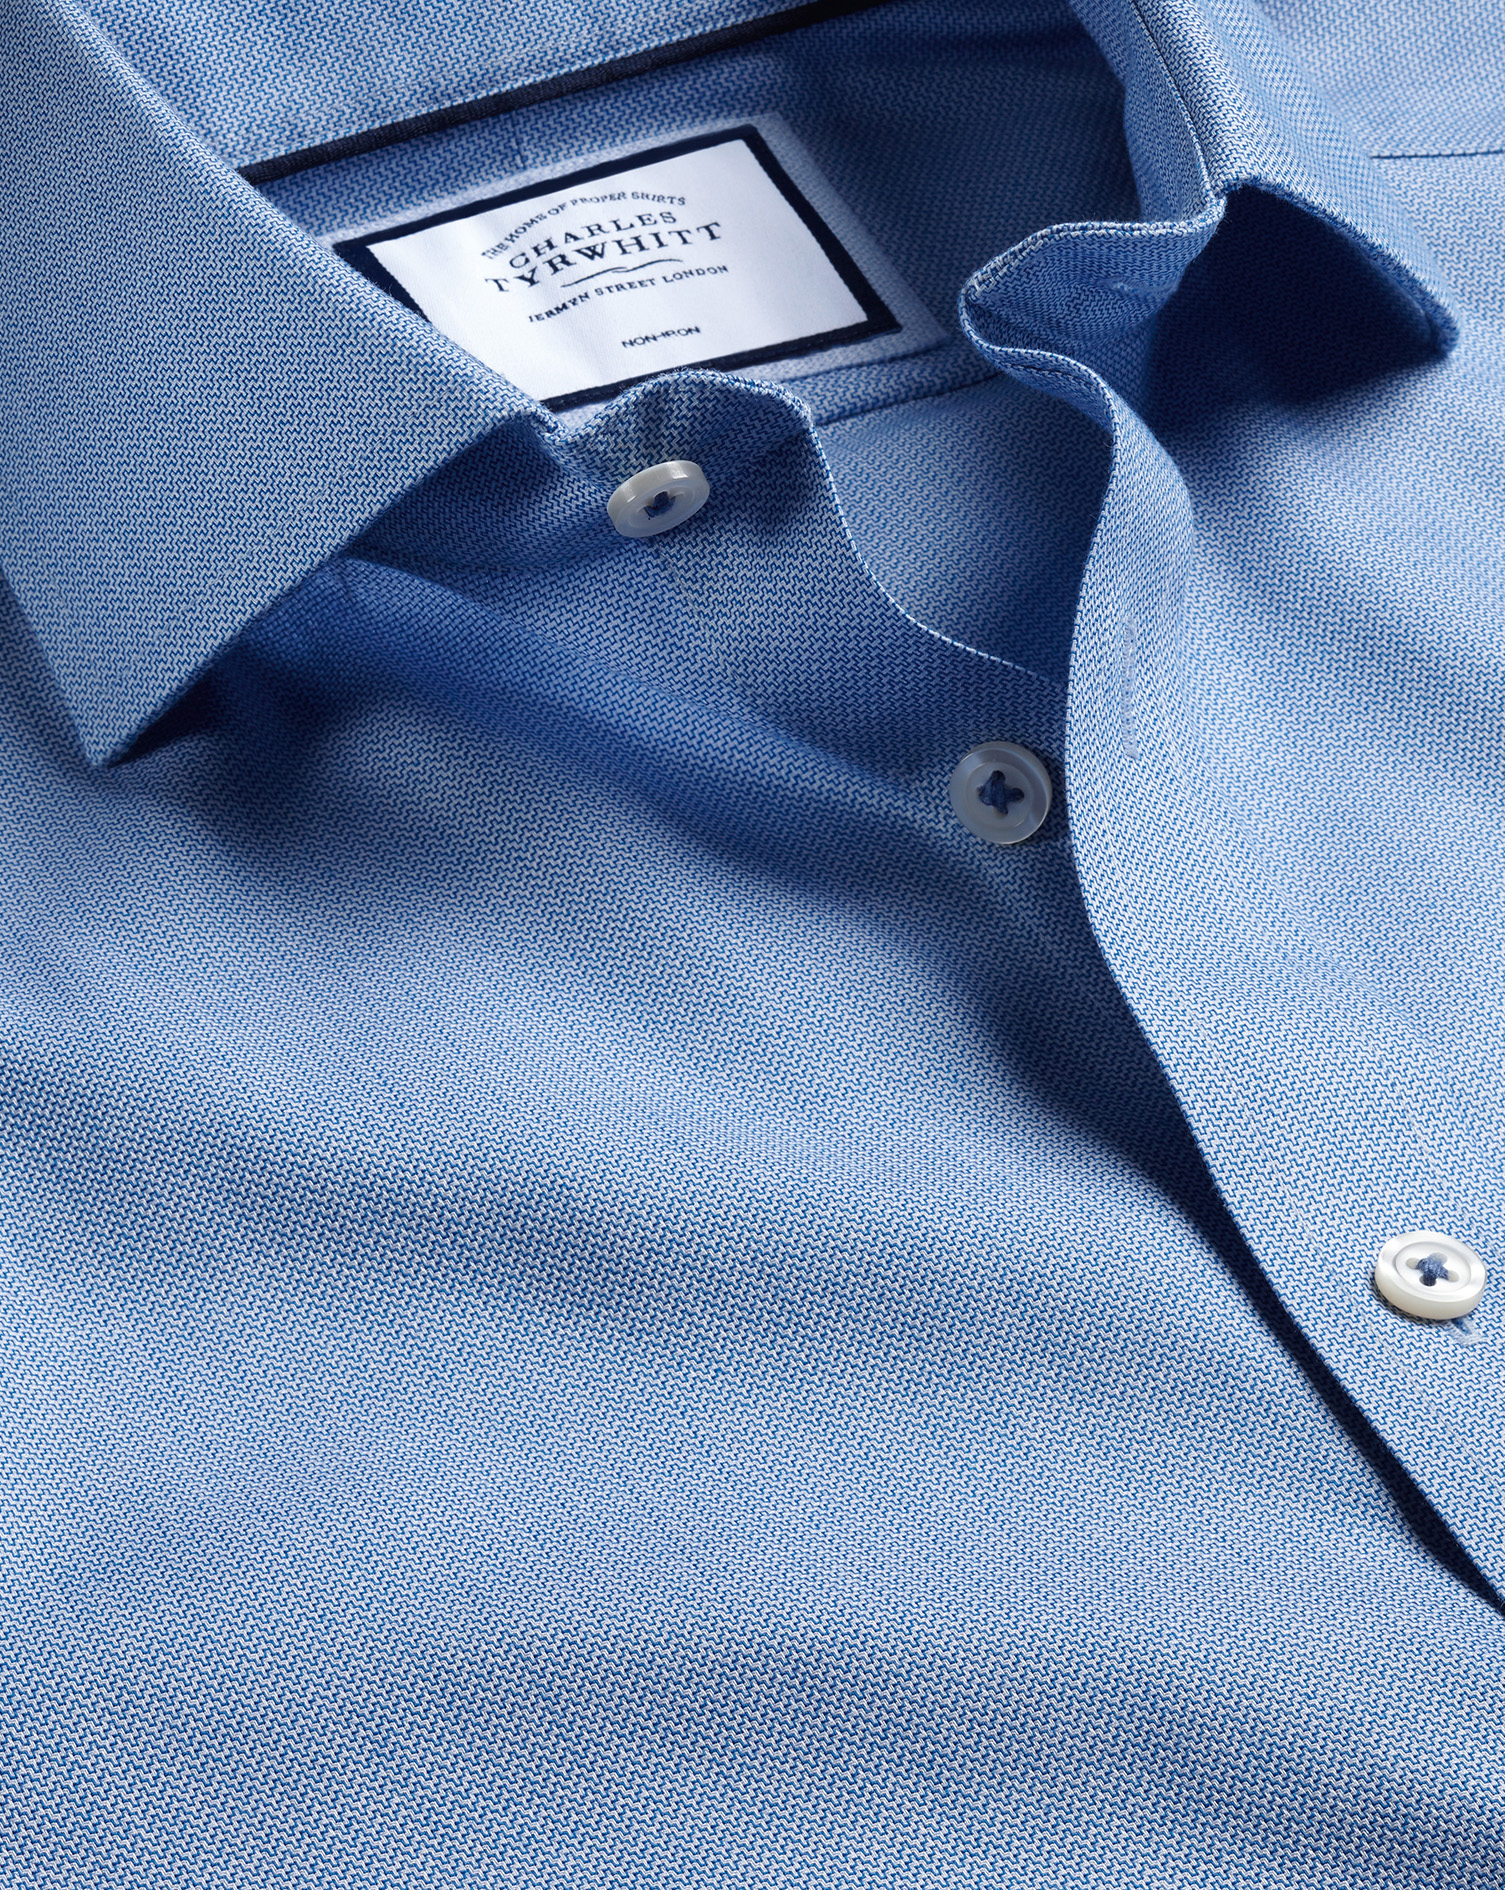 Men's Charles Tyrwhitt Cutaway Collar Non-Iron Henley Weave Dress Shirt - Ocean Blue Single Cuff Siz